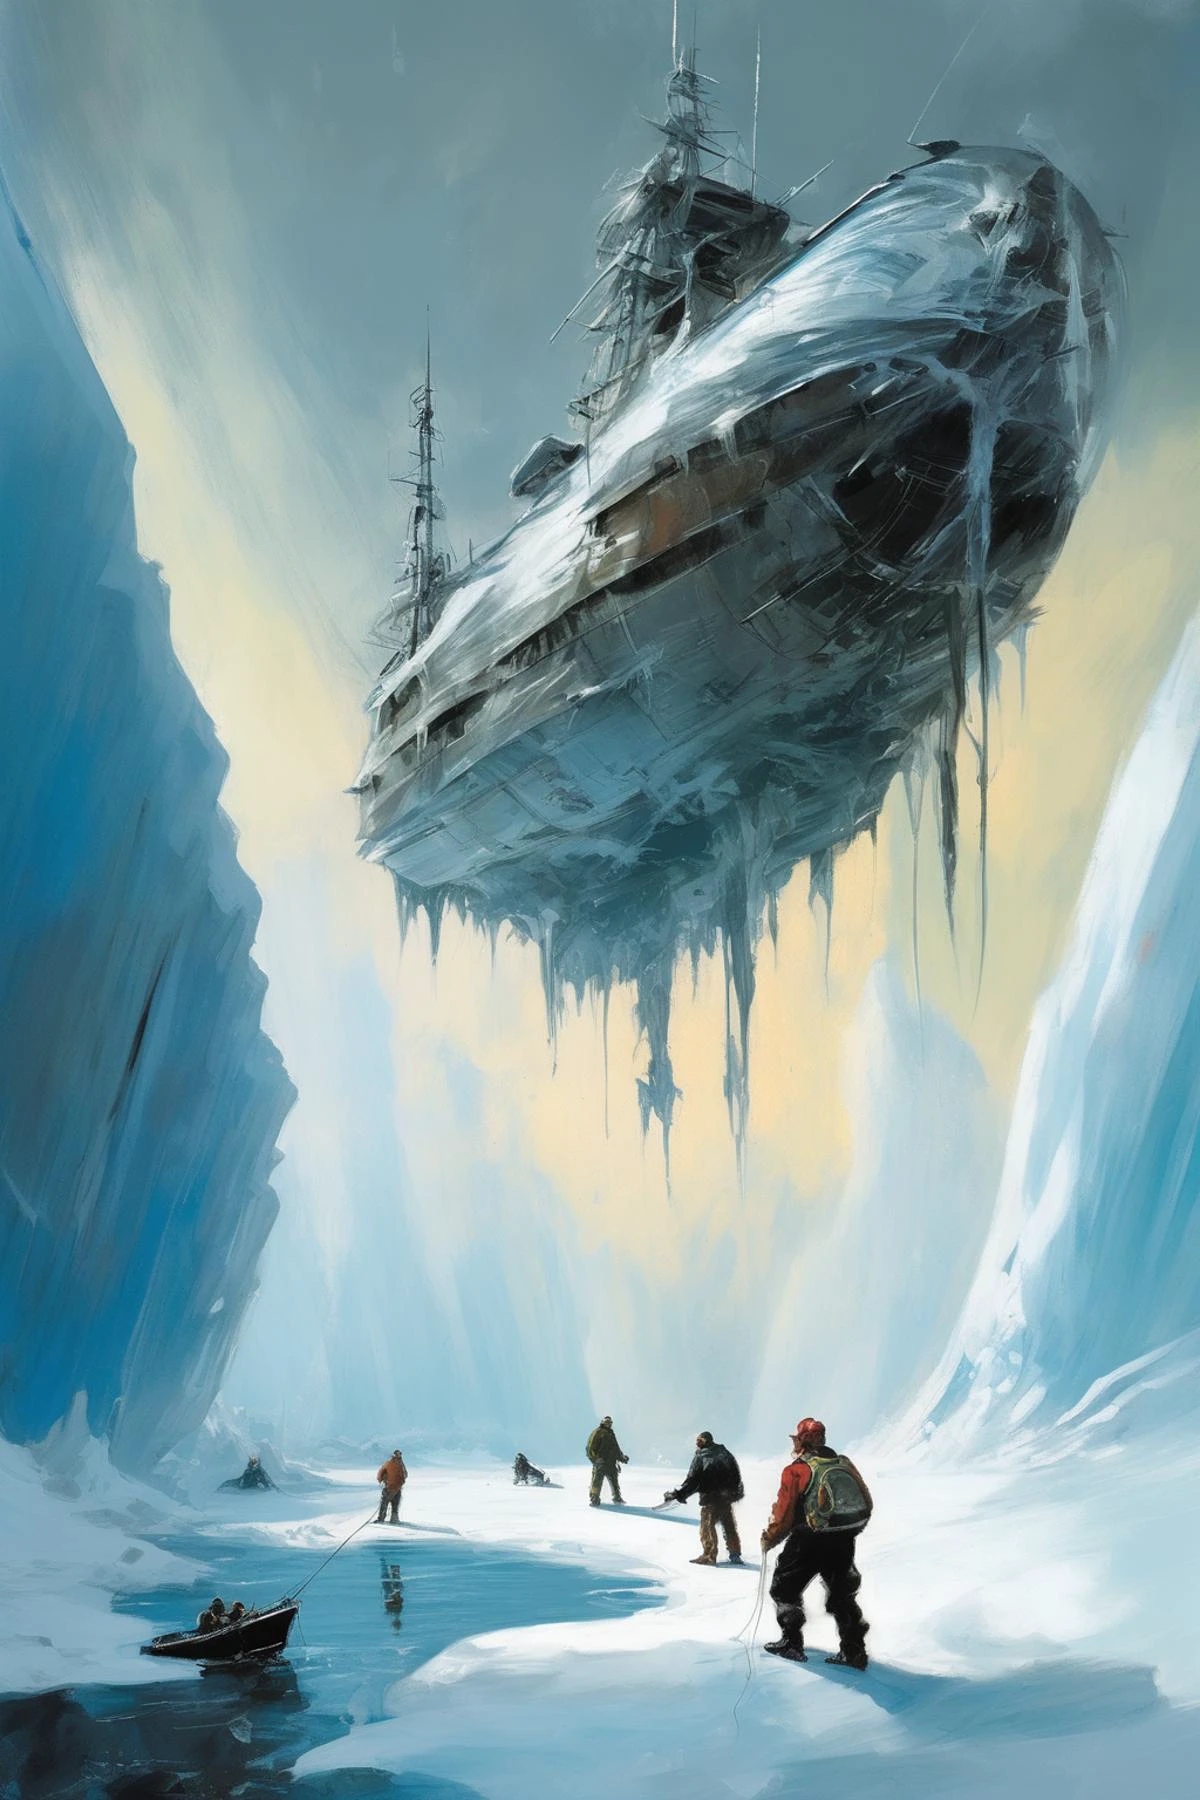 John Berkey Style - hand drawn picture of a Male Burly Fishermen finding a frozen alien ship trapped in a glacier in the art style of John Berkey